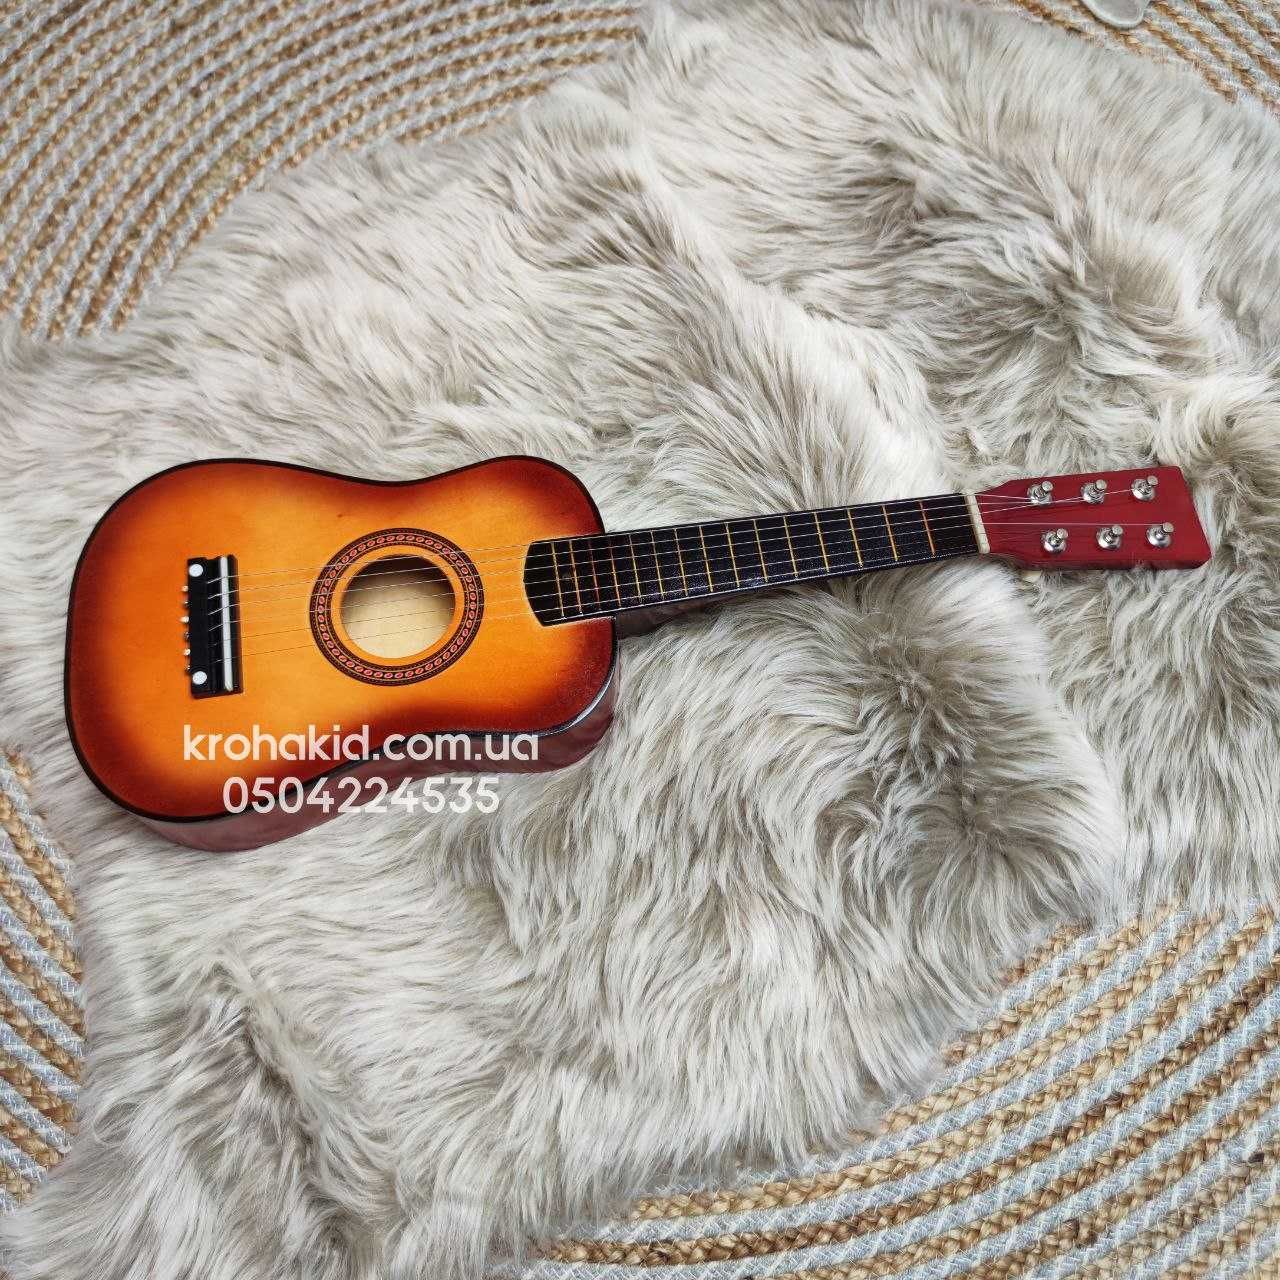 Гітара M 1370 дерев'яна 52 см струни 6 шт запасна струна медіатор